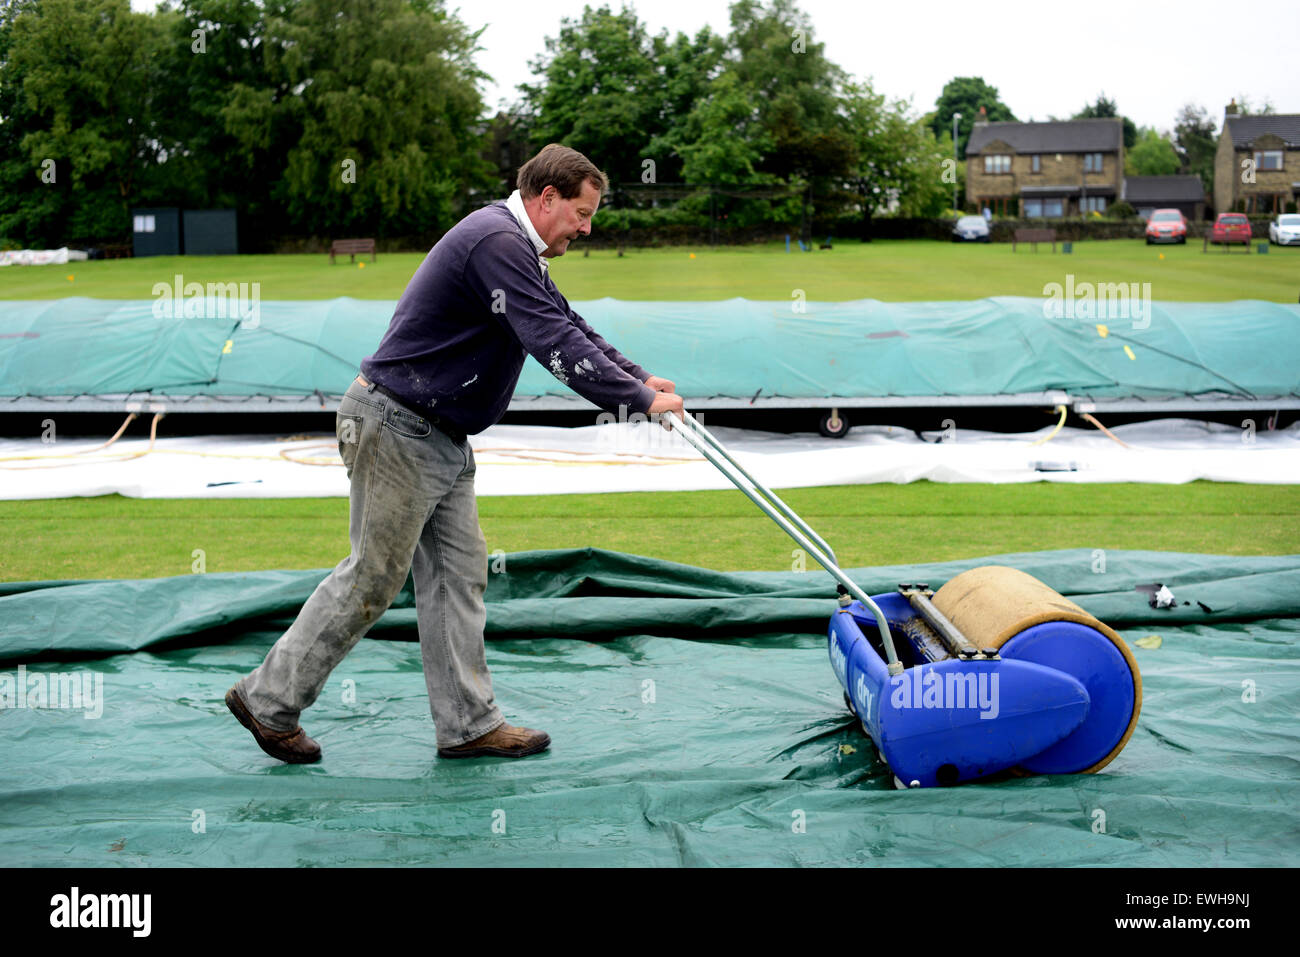 Un groundsman assorbendo acqua di pioggia sul campo da cricket utilizzando un archetto a secco. Immagine: Scott Bairstow/Alamy Foto Stock